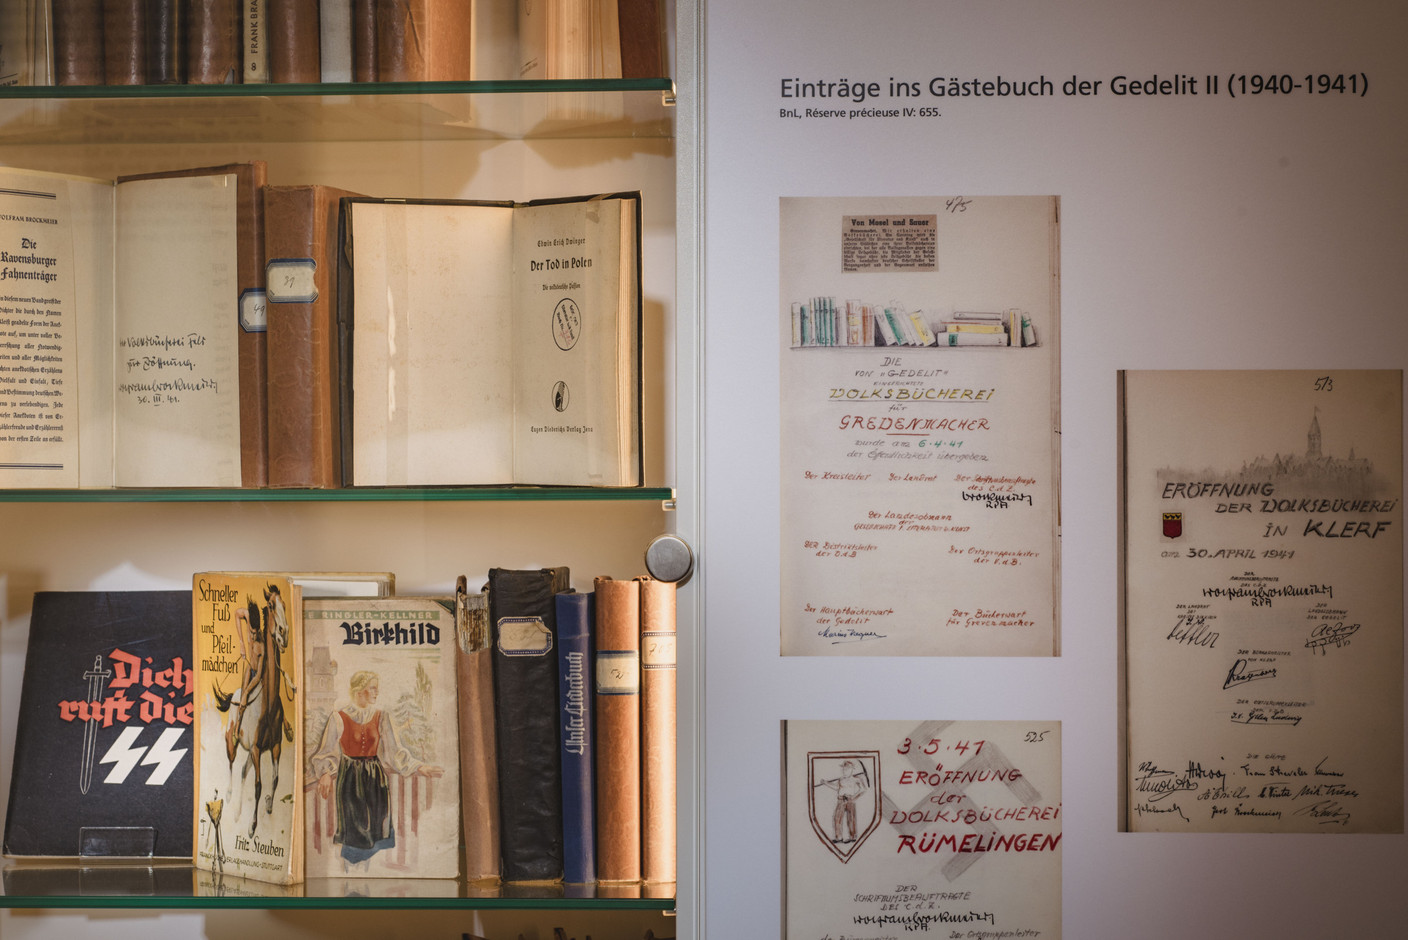 La littérature allemande propagandiste s’est imposée dans les bibliothèques du pays durant l’Occupation. Nader Ghavami / Maison Moderne